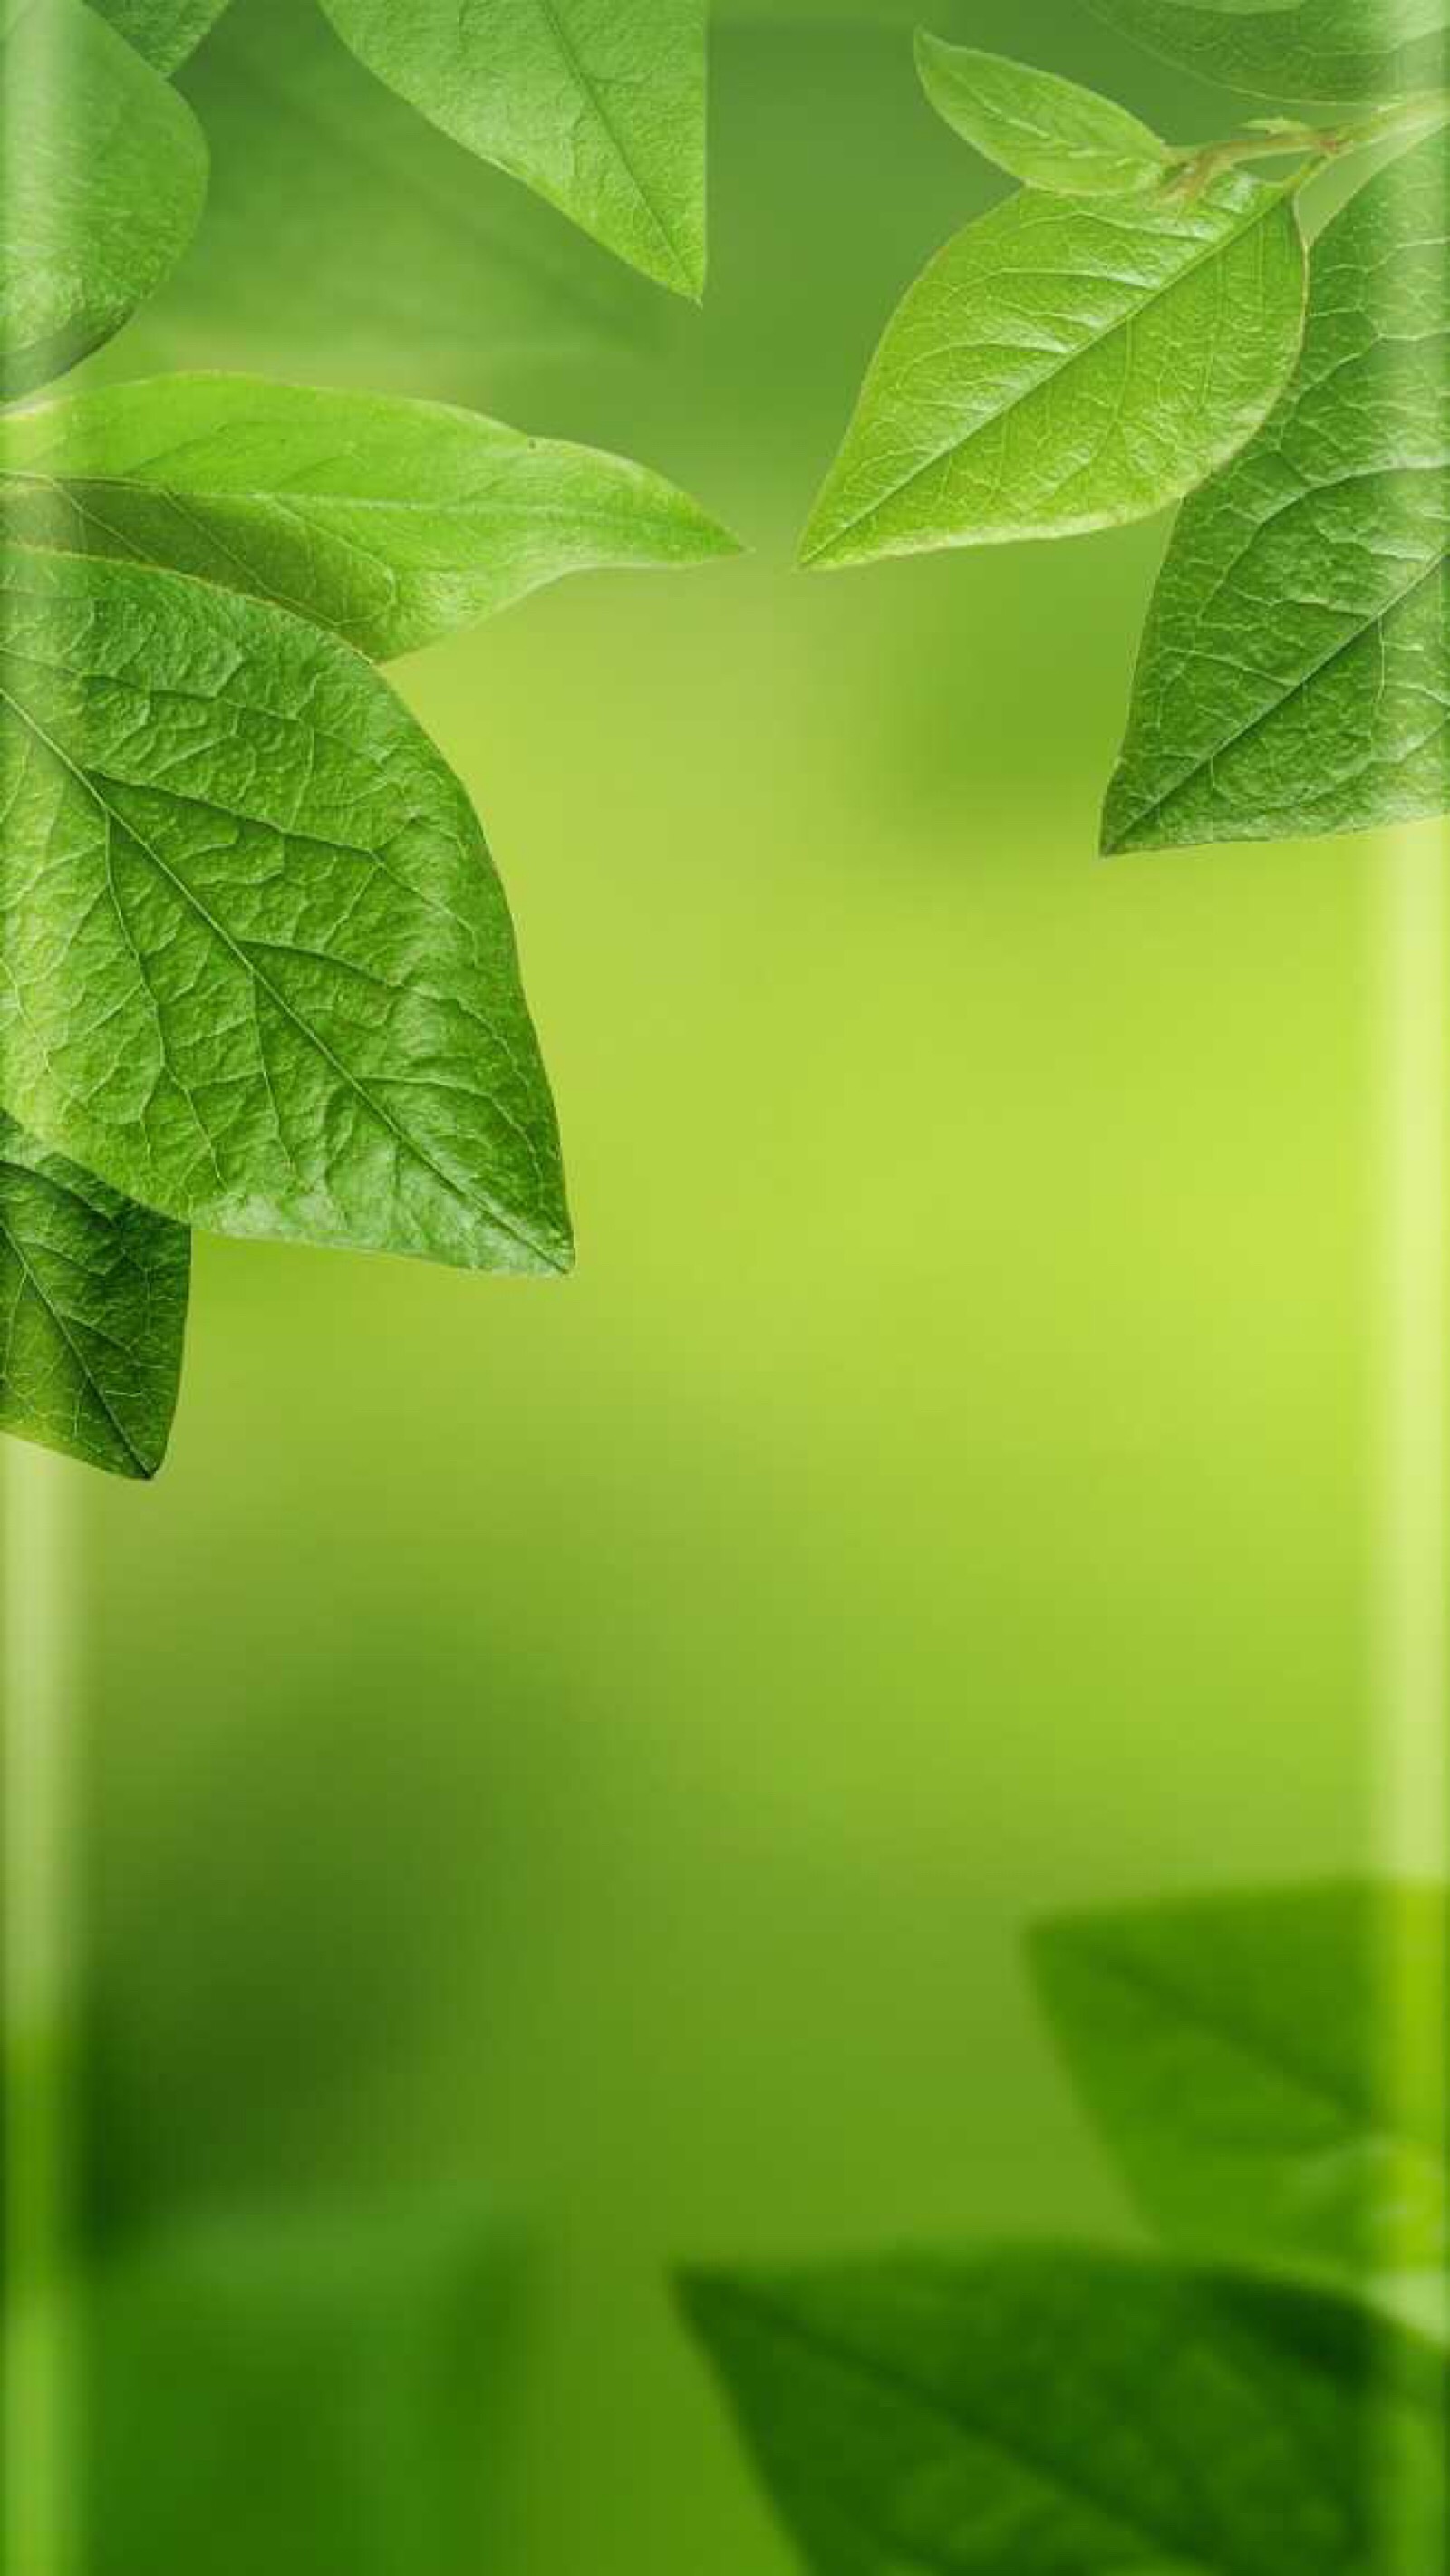 背景 壁纸 绿色 绿叶 树叶 植物 桌面 1600_2843 竖版 竖屏 手机